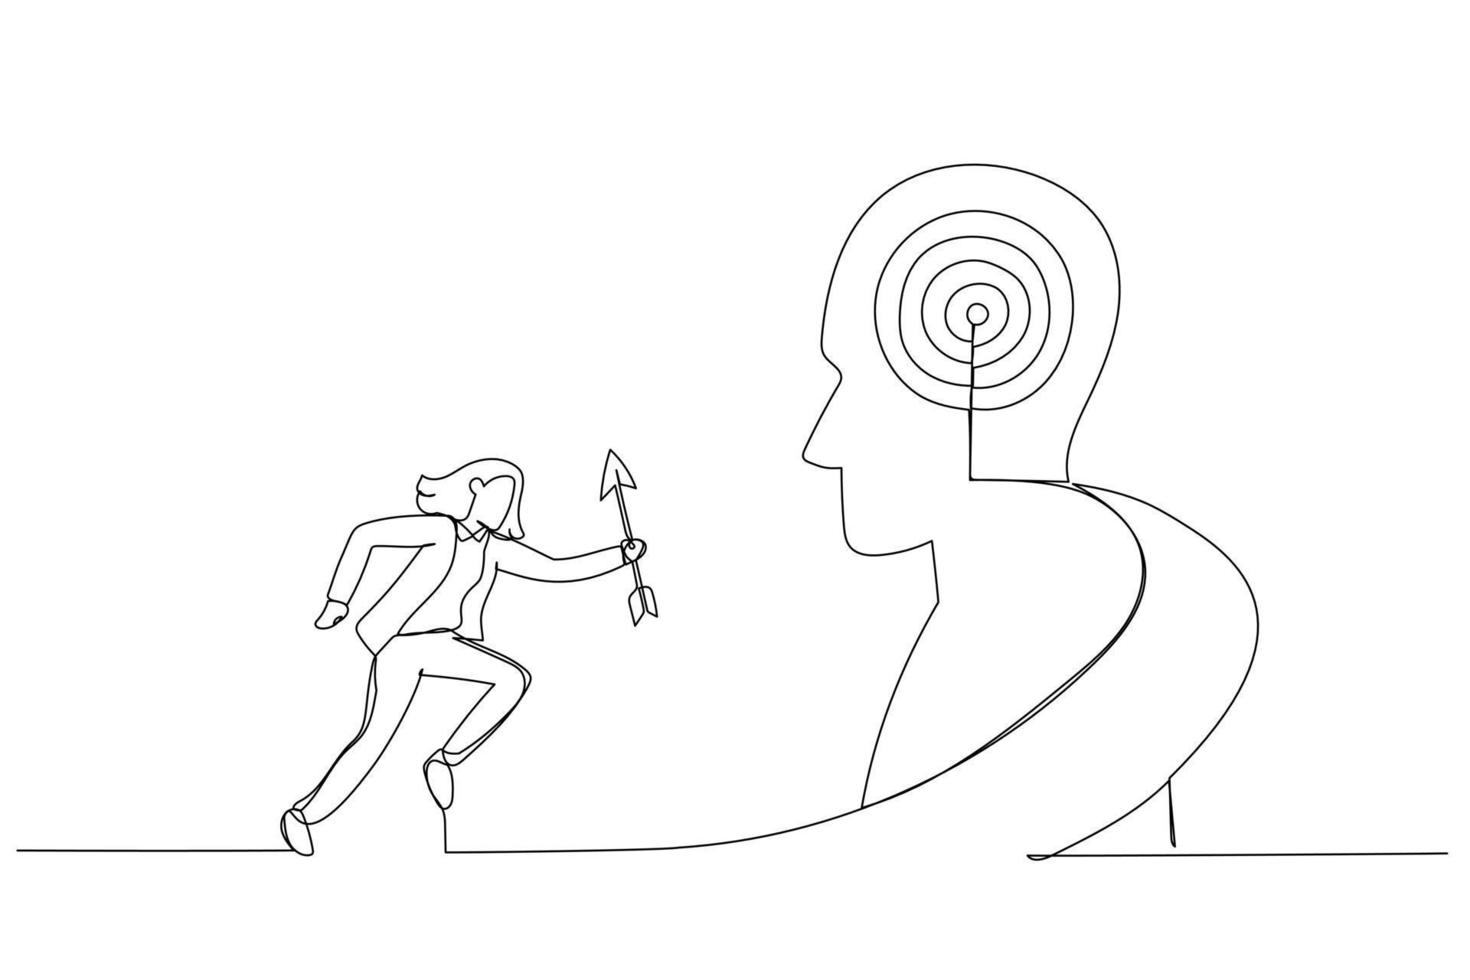 Zeichnung der Geschäftsfrau hält den Pfeil, der die Treppe hinauf zum Ziel auf dem menschlichen Kopf läuft. Metapher für Wachstum, Erfolg, Ziel, Positionierung. Kunststil mit durchgehender Linie vektor